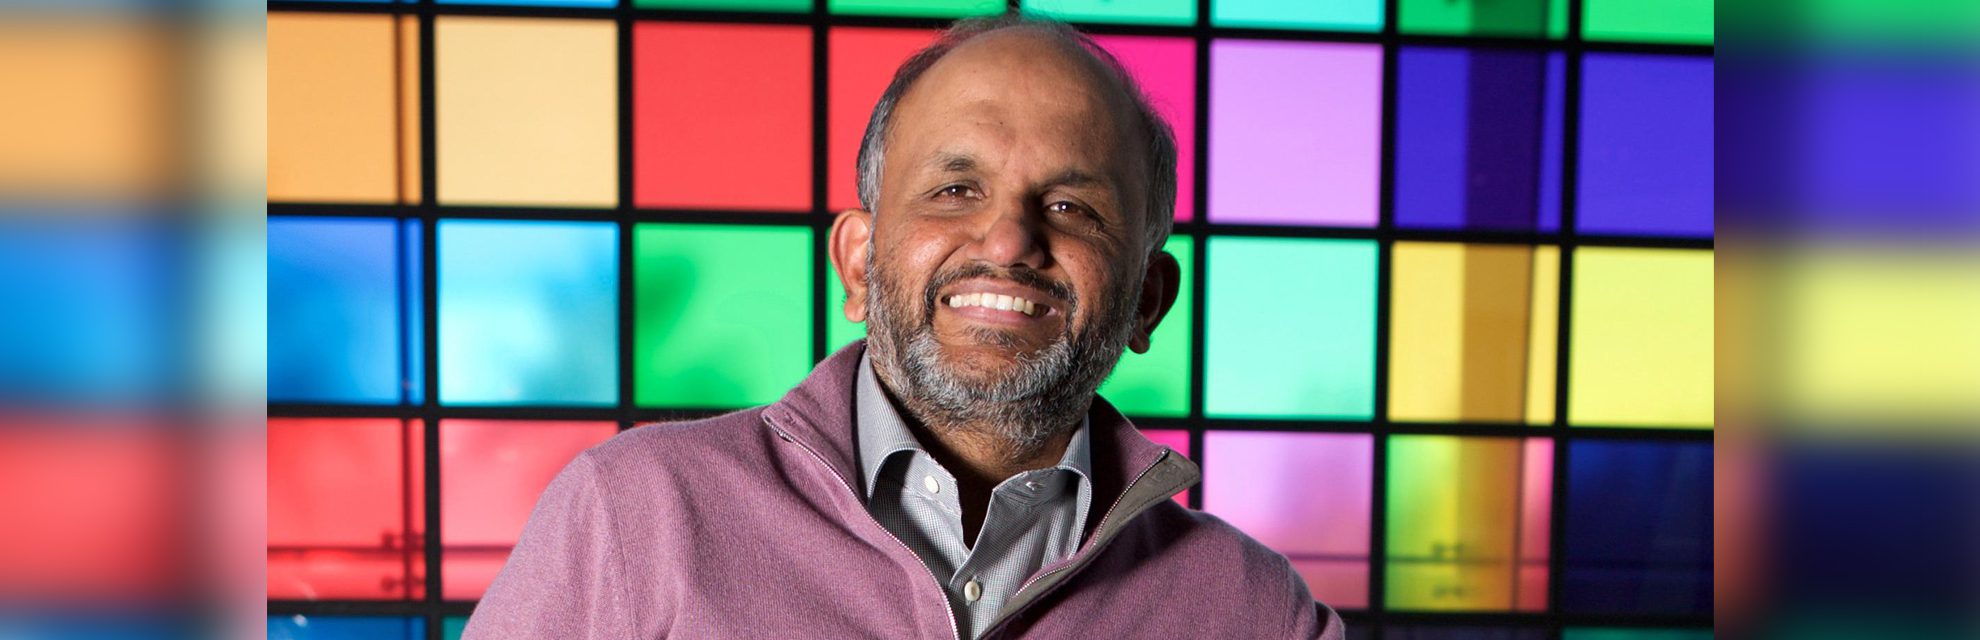 Shantanu Narayen - Adobe ၏ နှလုံးသားနှင့် စိတ်ဝိညာဉ်ဖြစ်သော CEO